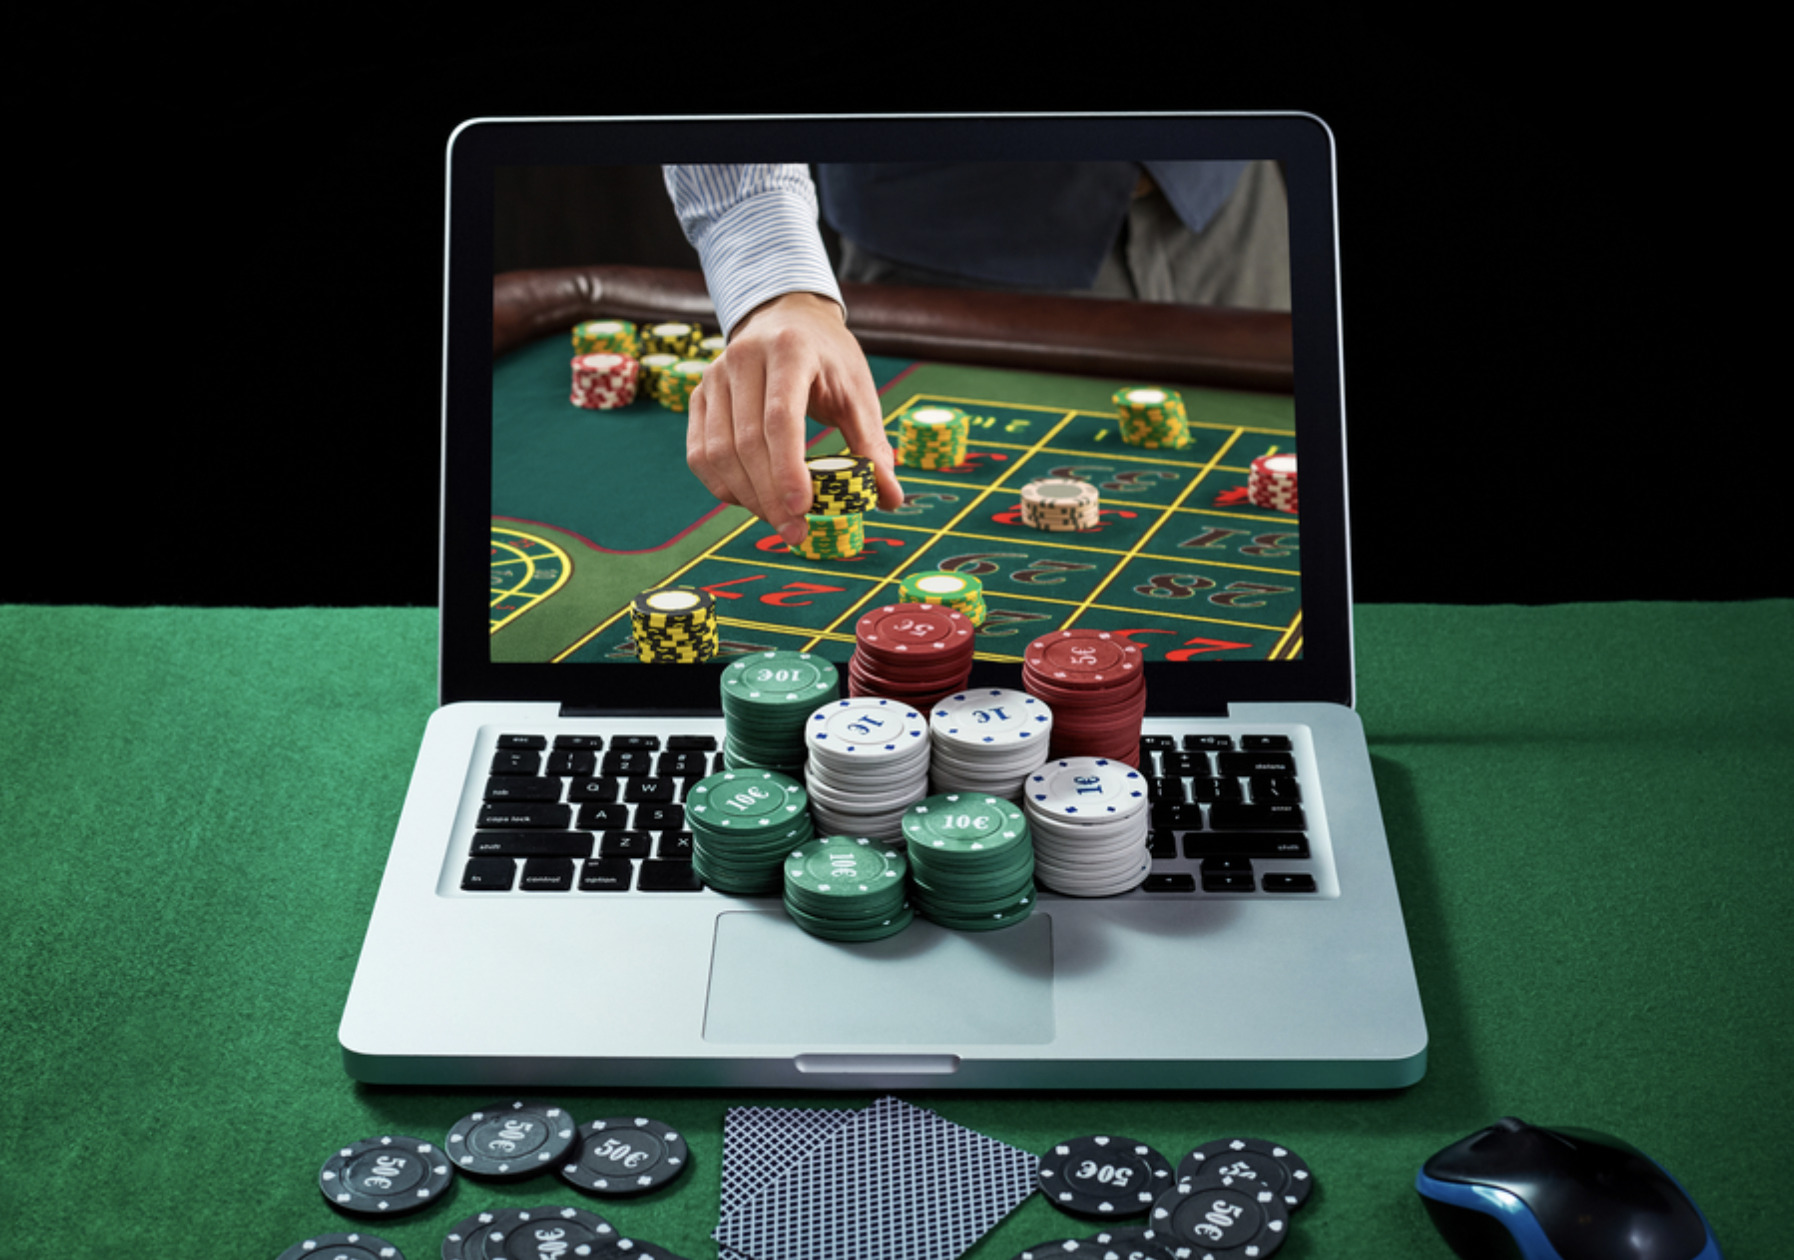 Играть в инете. Казино. Интернет казино. Азартные игры в интернете. Азартные игры интернет казино.